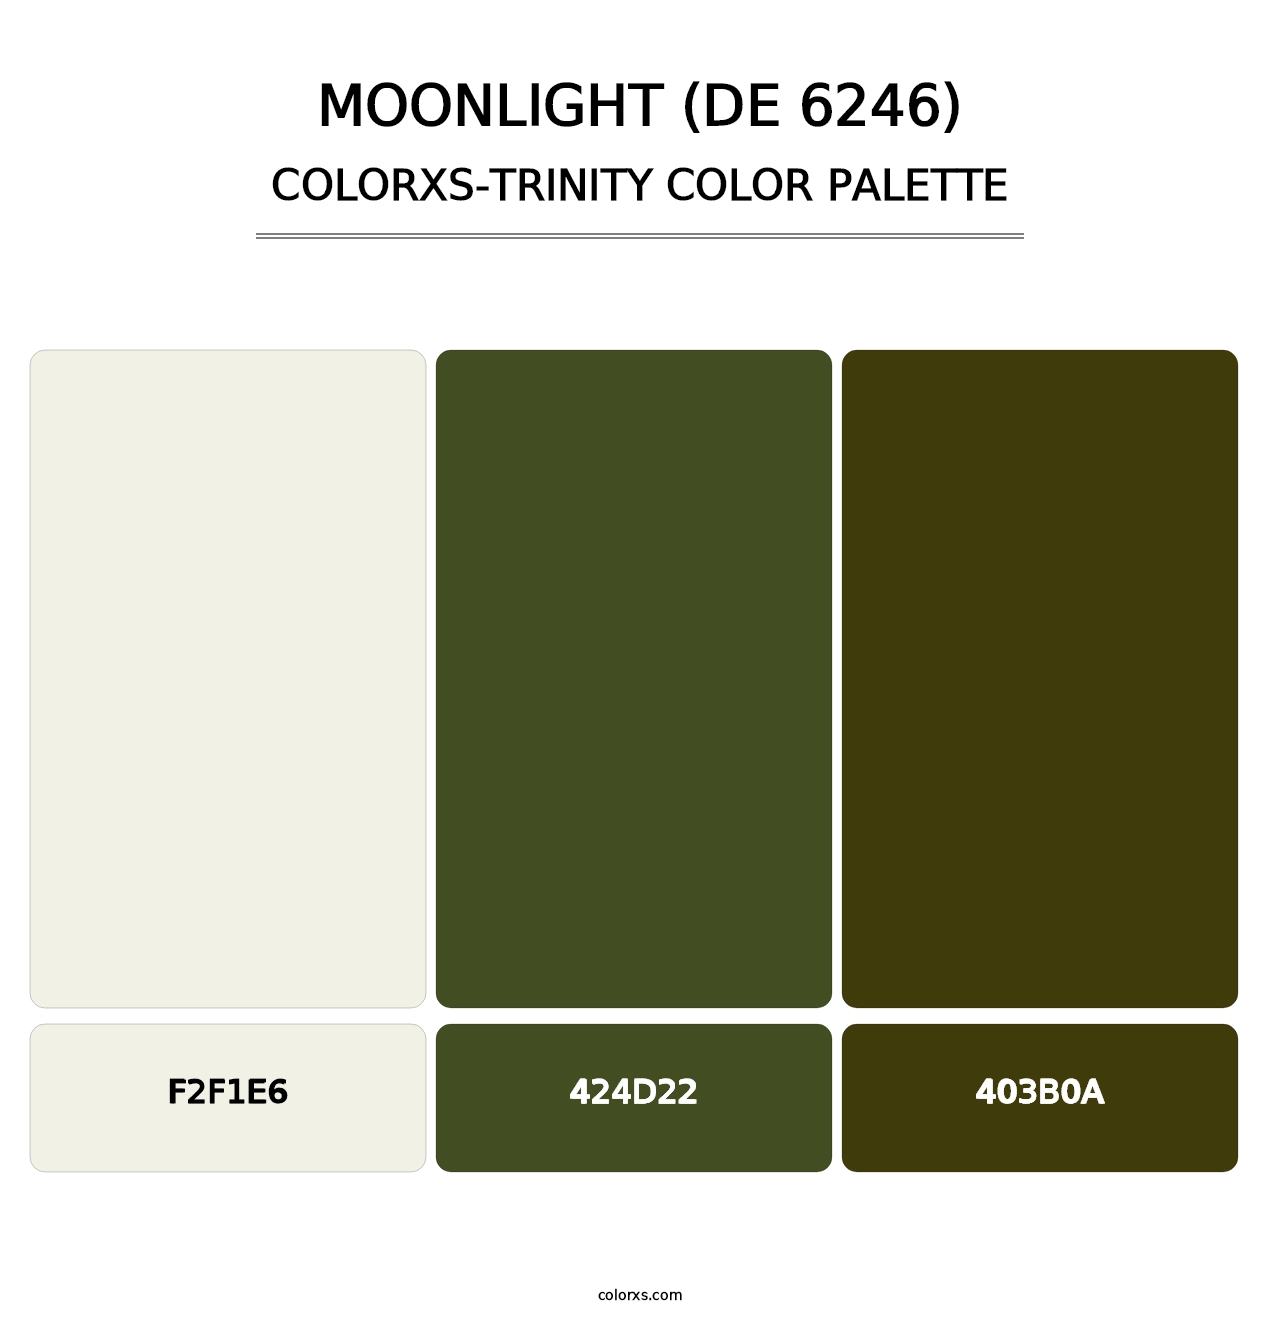 Moonlight (DE 6246) - Colorxs Trinity Palette